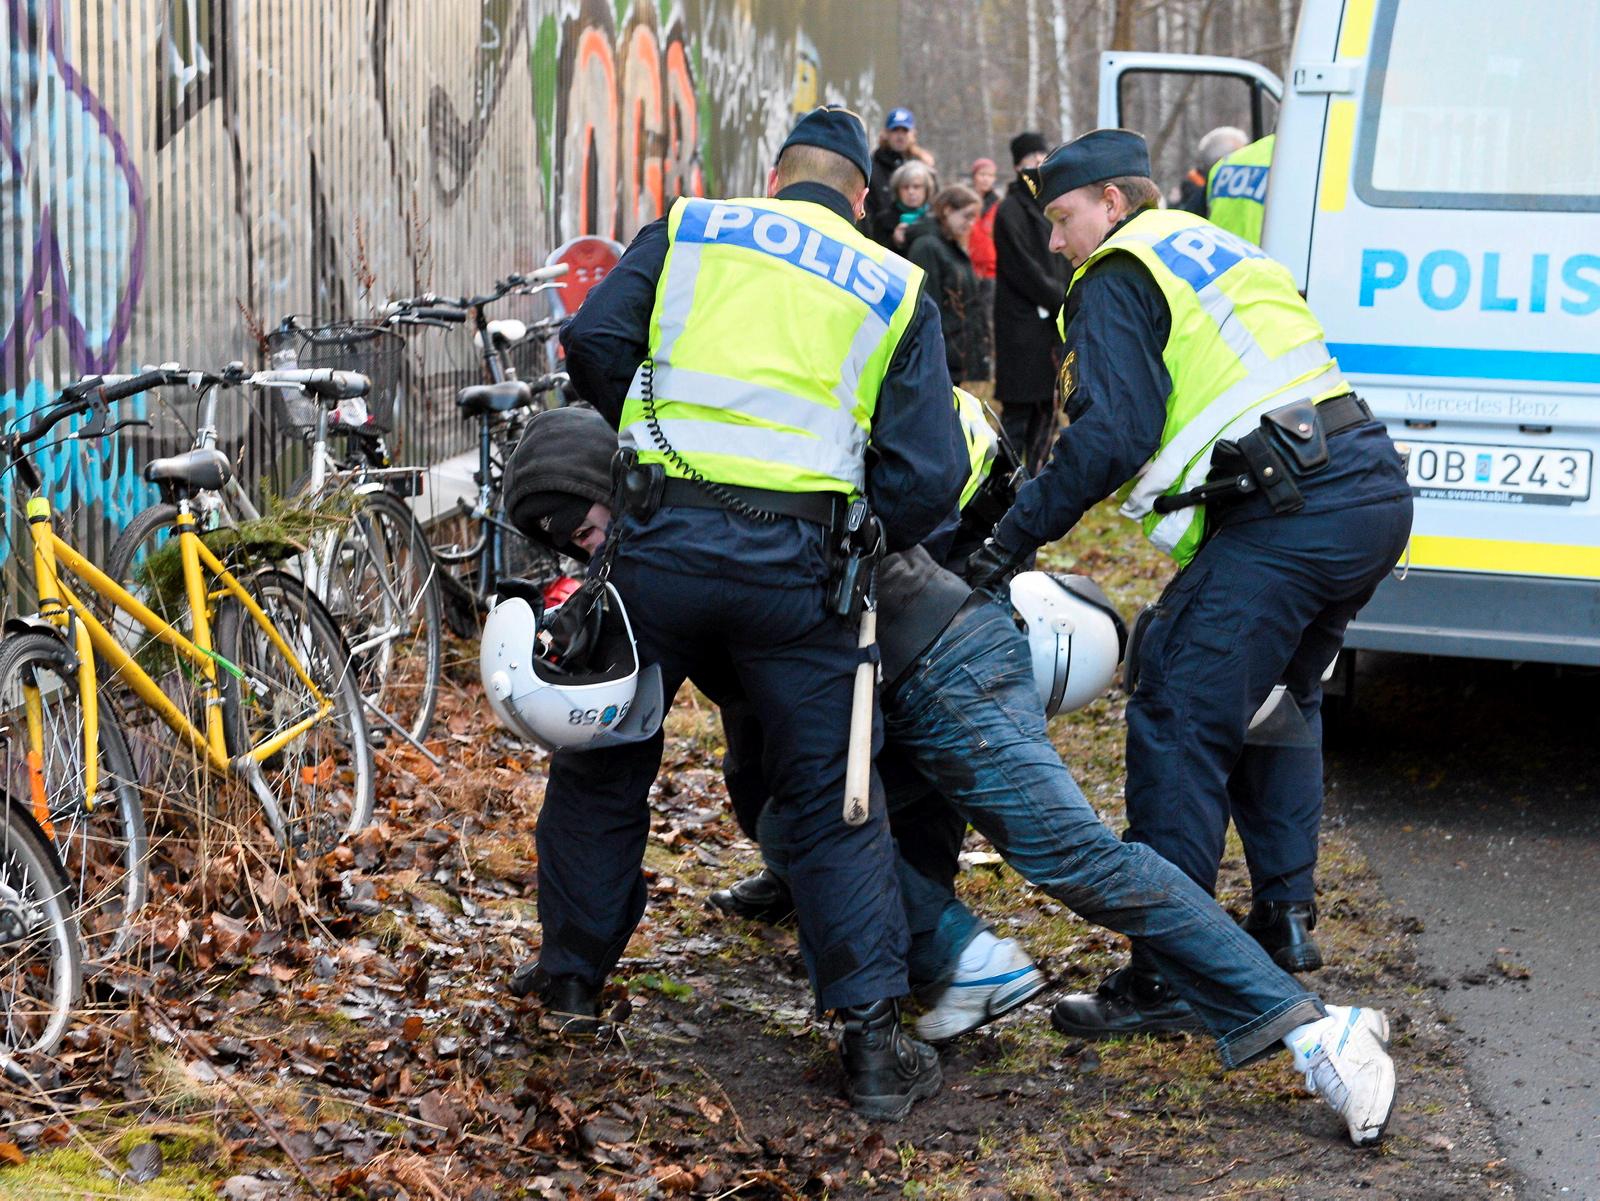 Svensk politi pågriper en person i forbindelse med en demonstrasjon mot rasisme og nazisme i Stockholm. Mímir Kristjánsson tror det vil være det beste for alle parter om svenskene konsentrerer seg mest om sine egne problemer, så kan nordmenn konsentrere seg om sine.